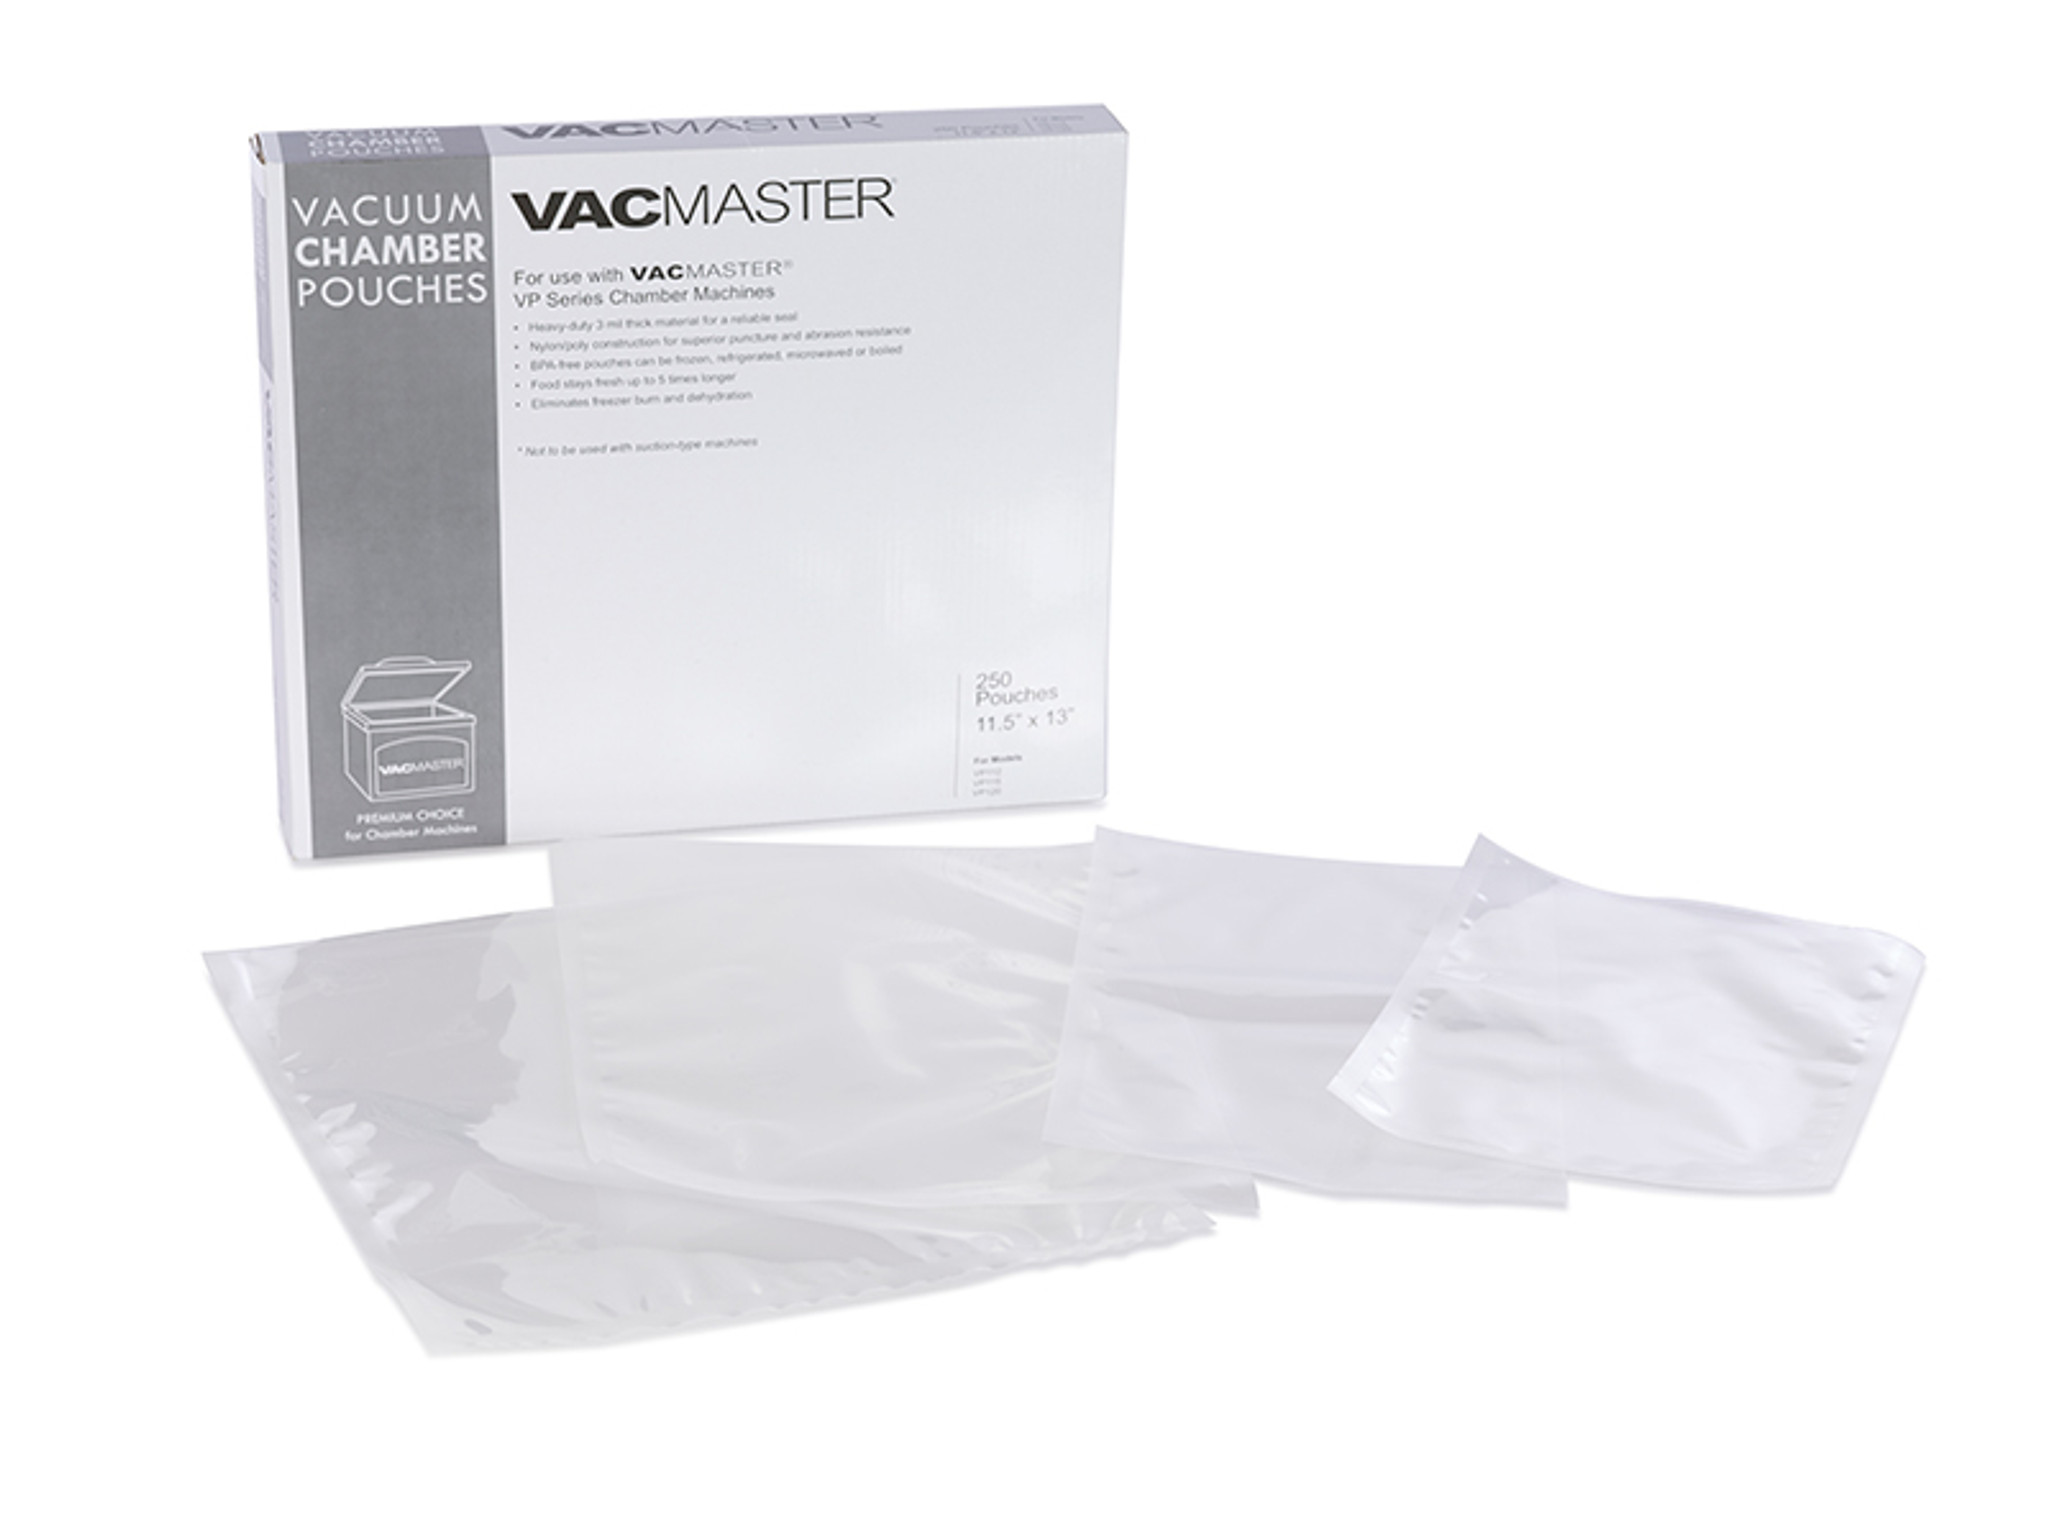 Vacmaster 948260 11.5 x 14 Full Mesh Vacuum Seal Gallon Bags - 40 Pack